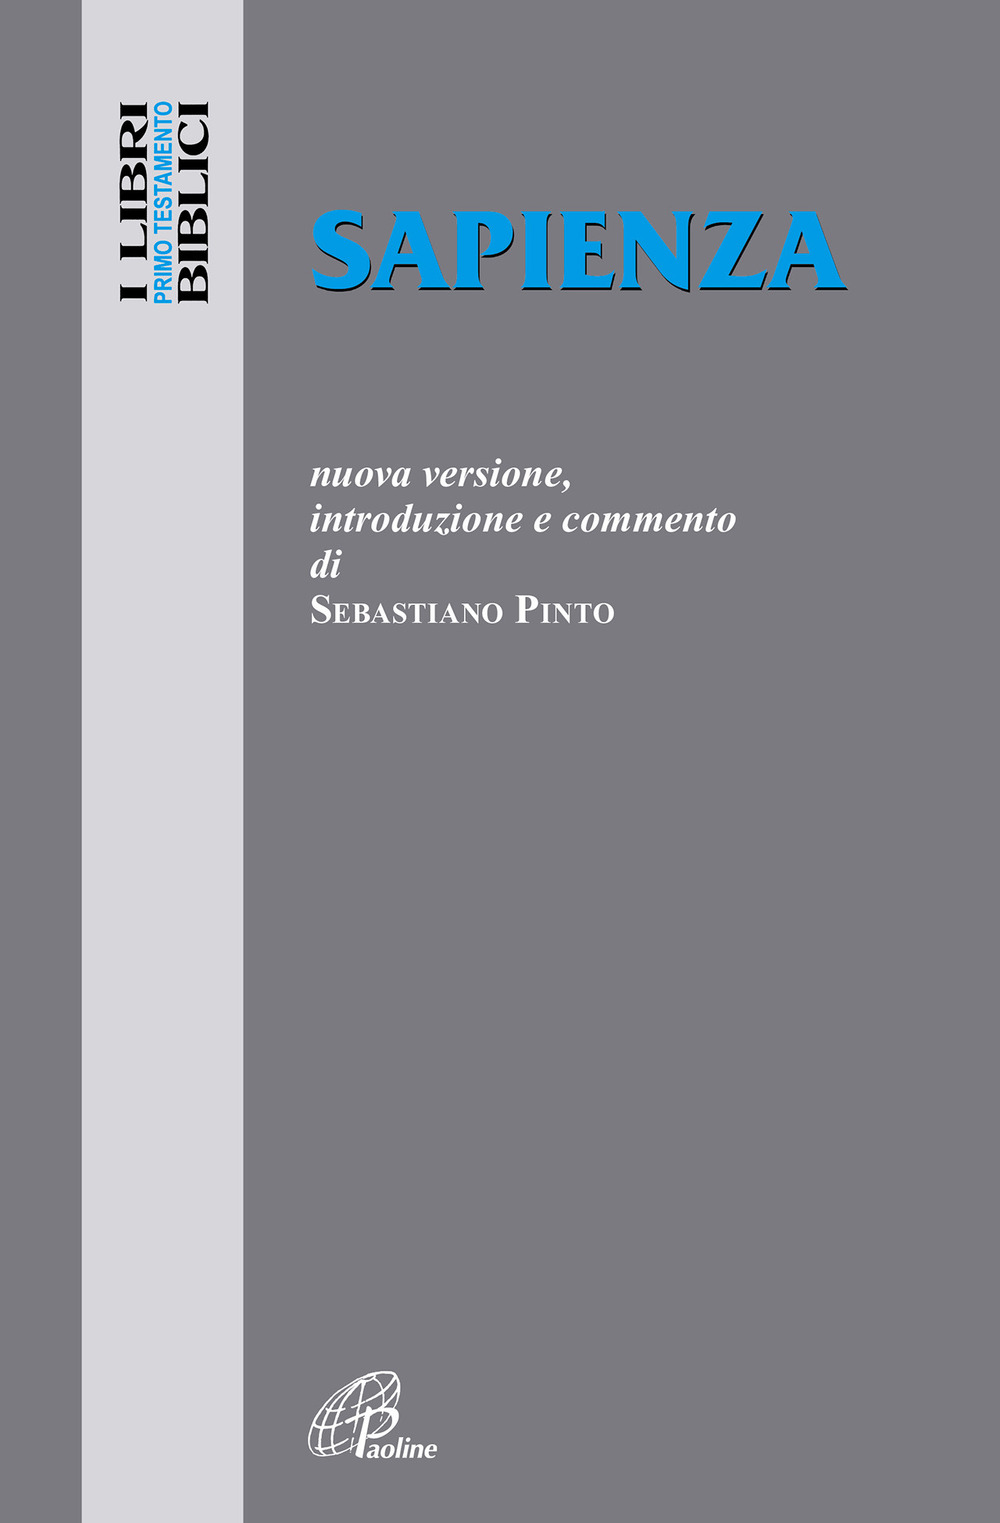 Libri Sebastiano Pinto - Sapienza NUOVO SIGILLATO, EDIZIONE DEL 01/03/2022 SUBITO DISPONIBILE